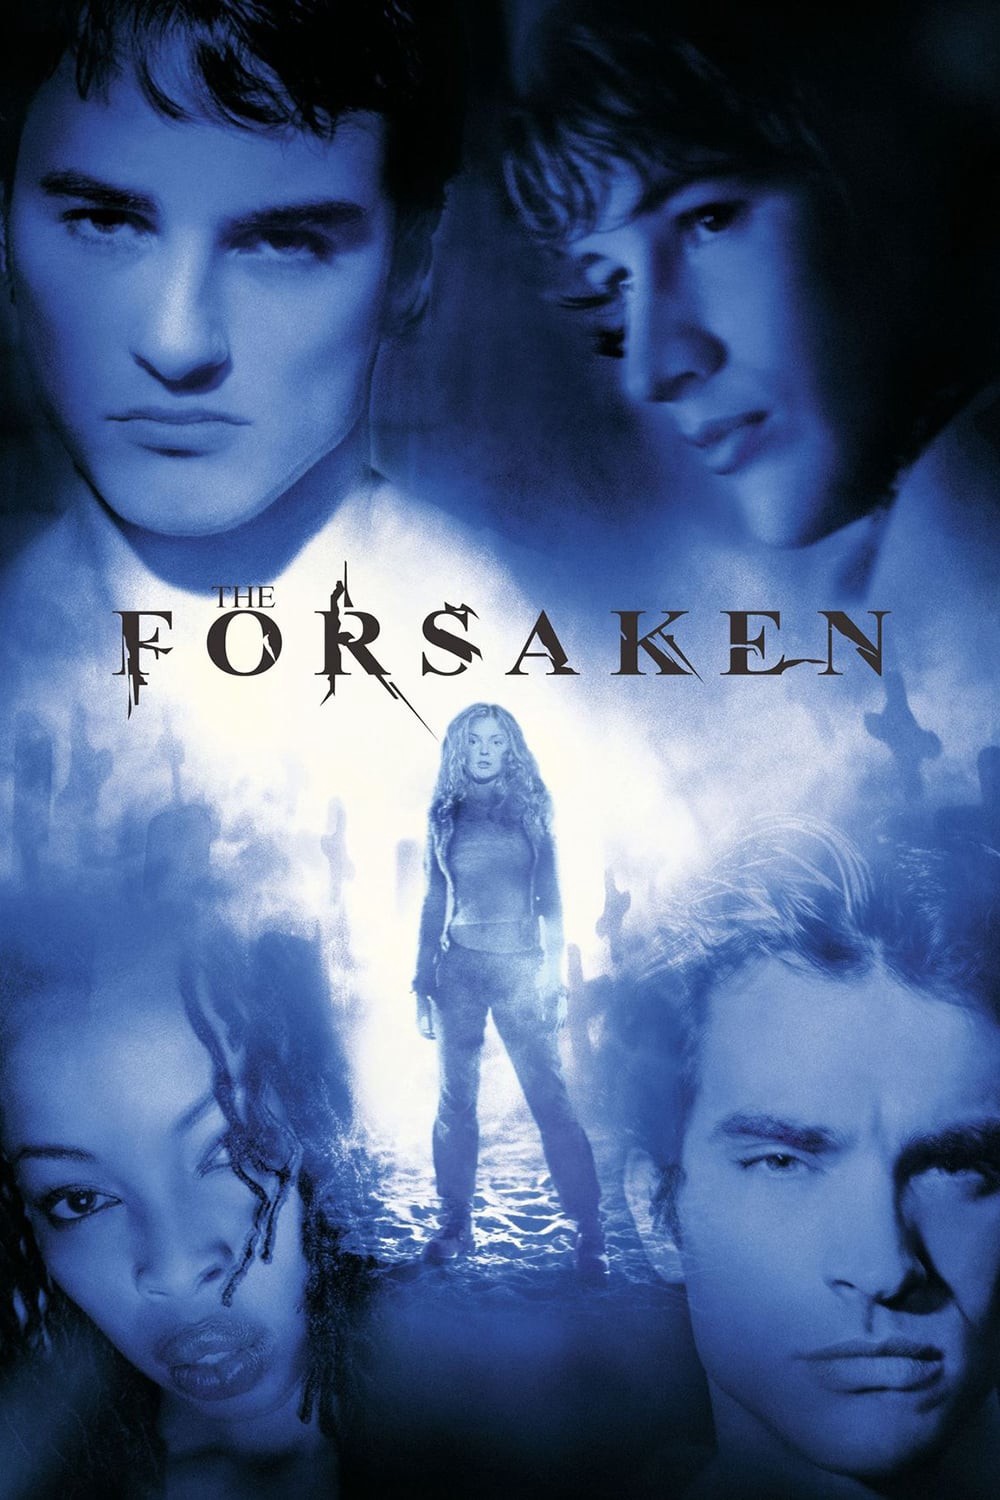 The Forsaken - The Forsaken (2001)